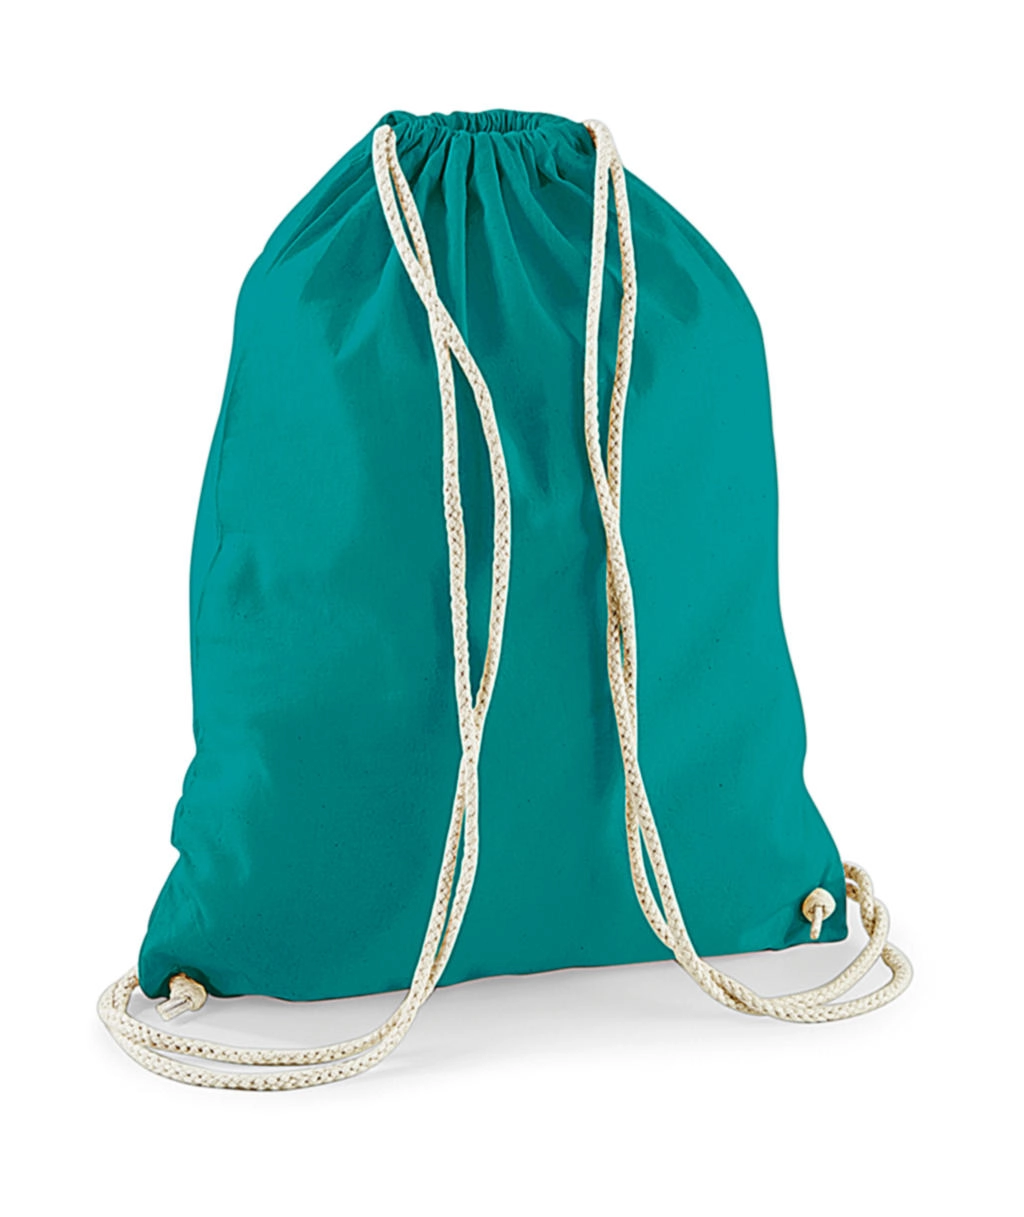 Cotton Gymsac zum Besticken und Bedrucken in der Farbe Emerald mit Ihren Logo, Schriftzug oder Motiv.